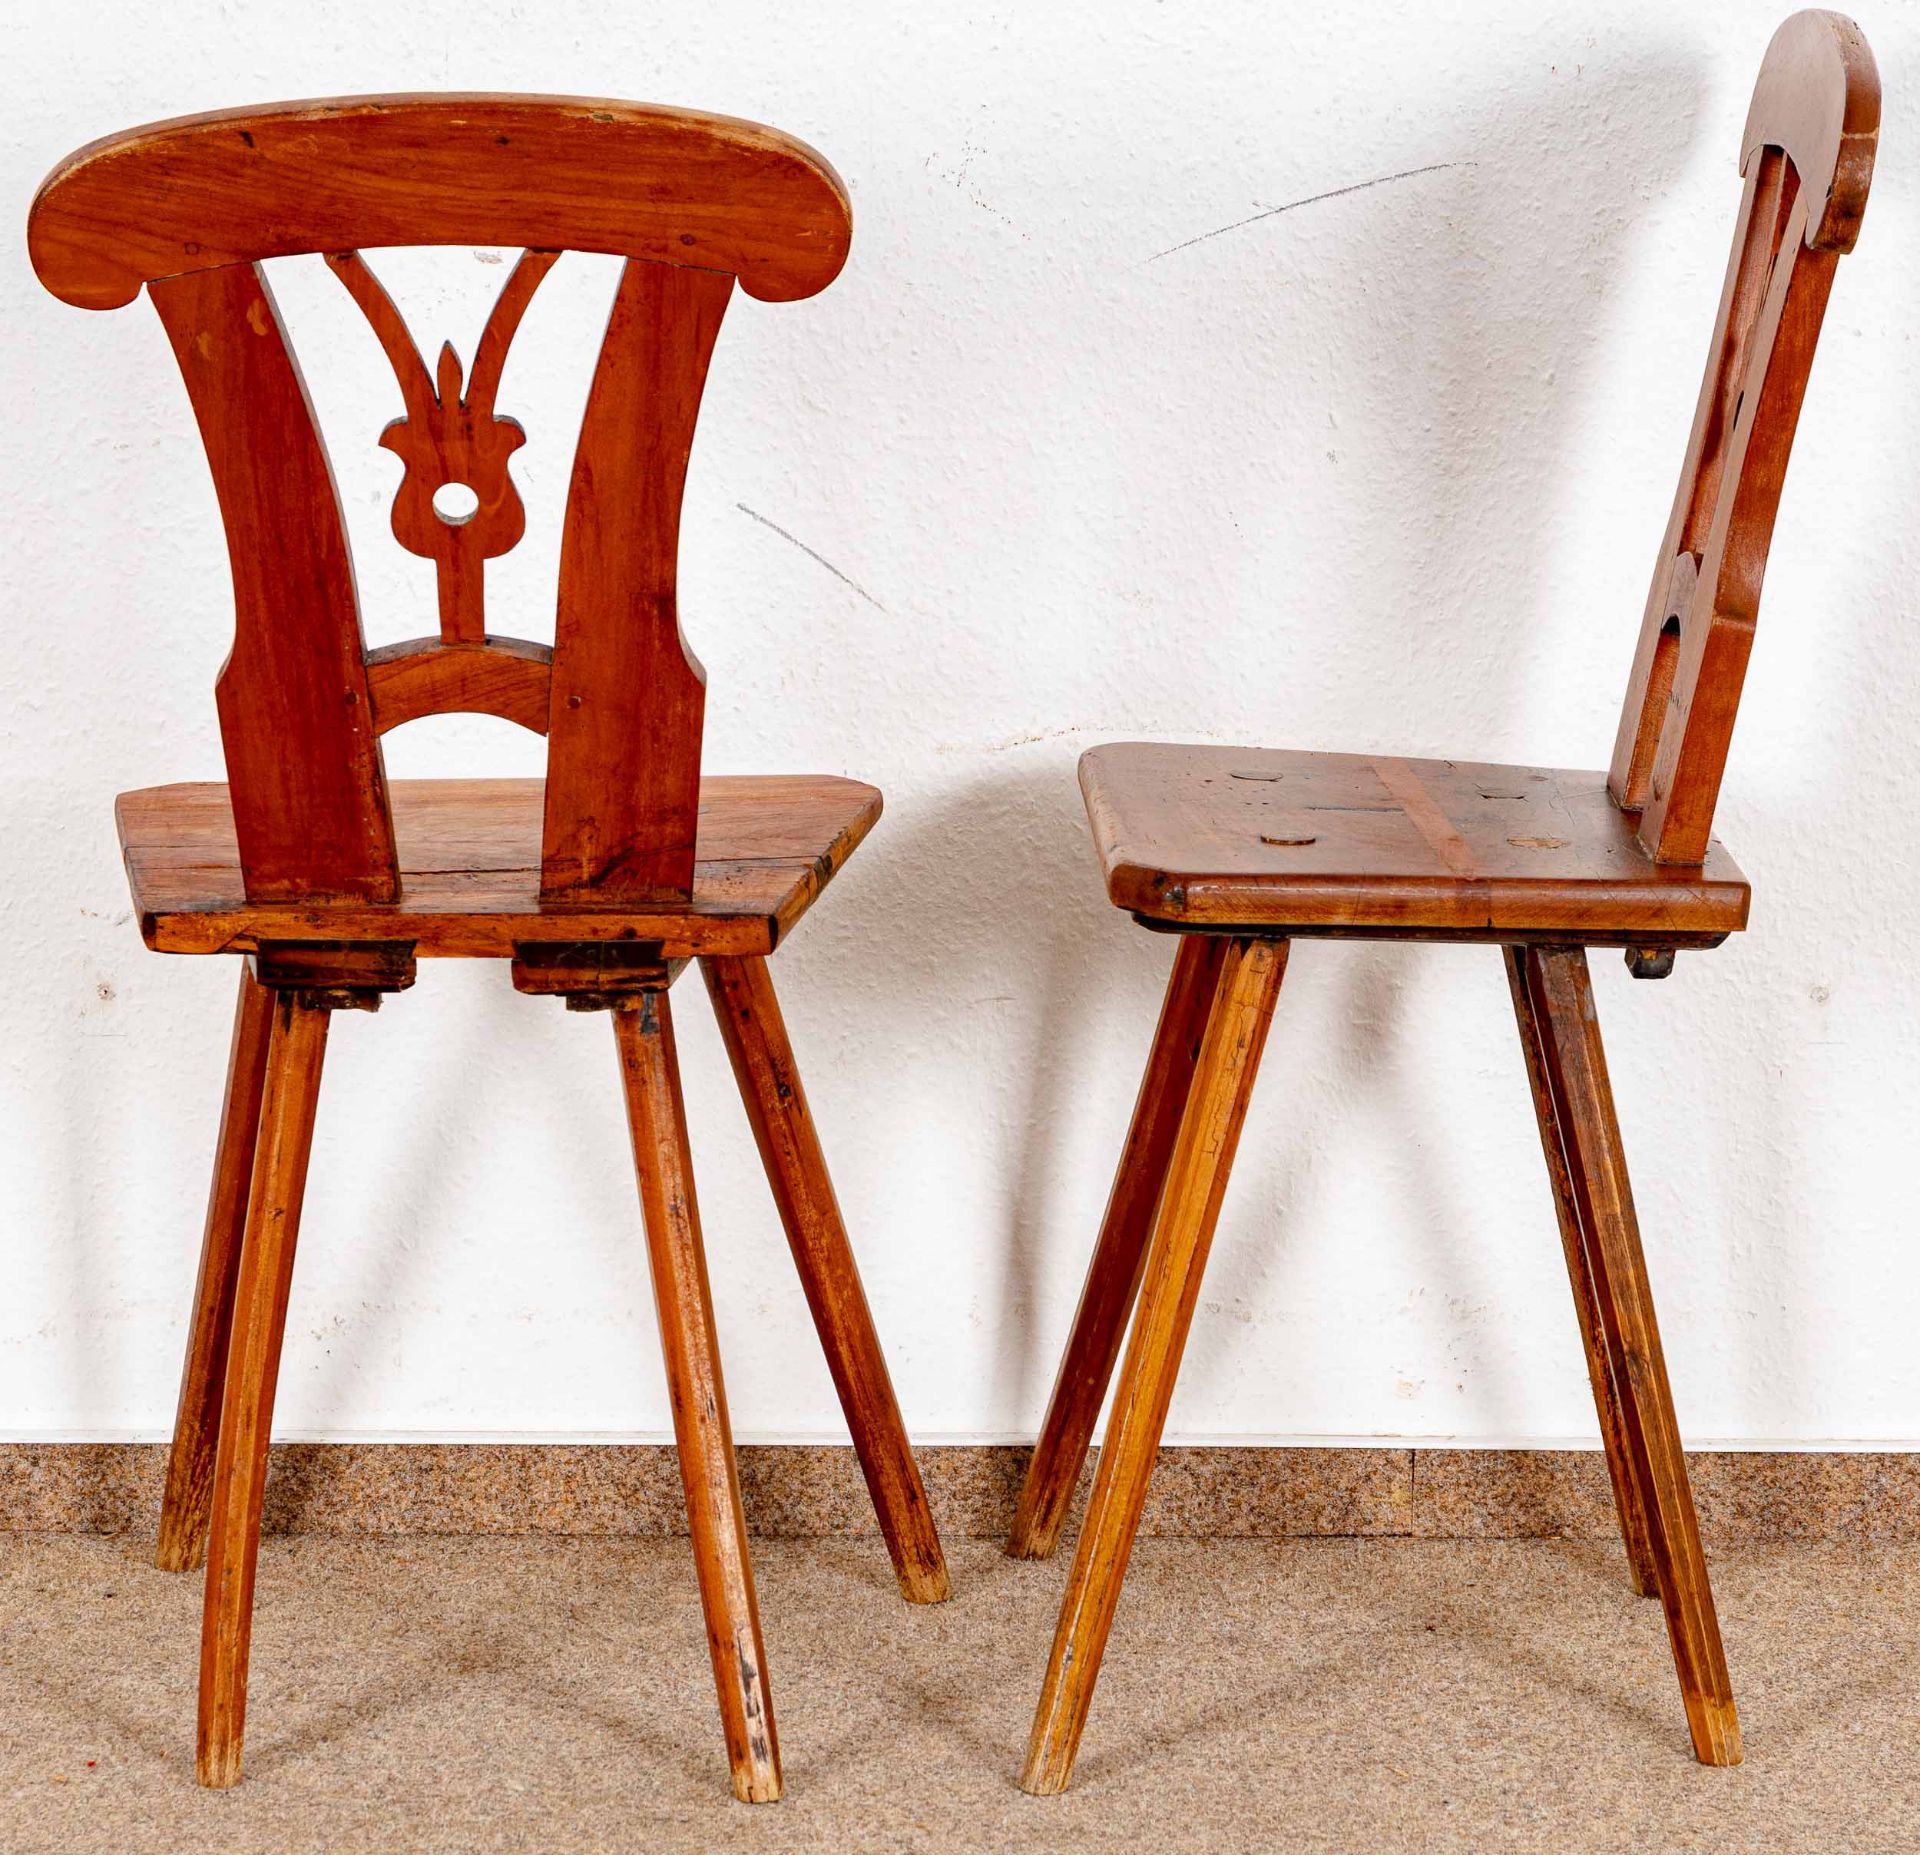 Paar Brettstühle, alpenländisch/süddeutsch, 19. Jhdt., kirschbaumfarbene Harthölzer; ältere Überarb - Bild 4 aus 4